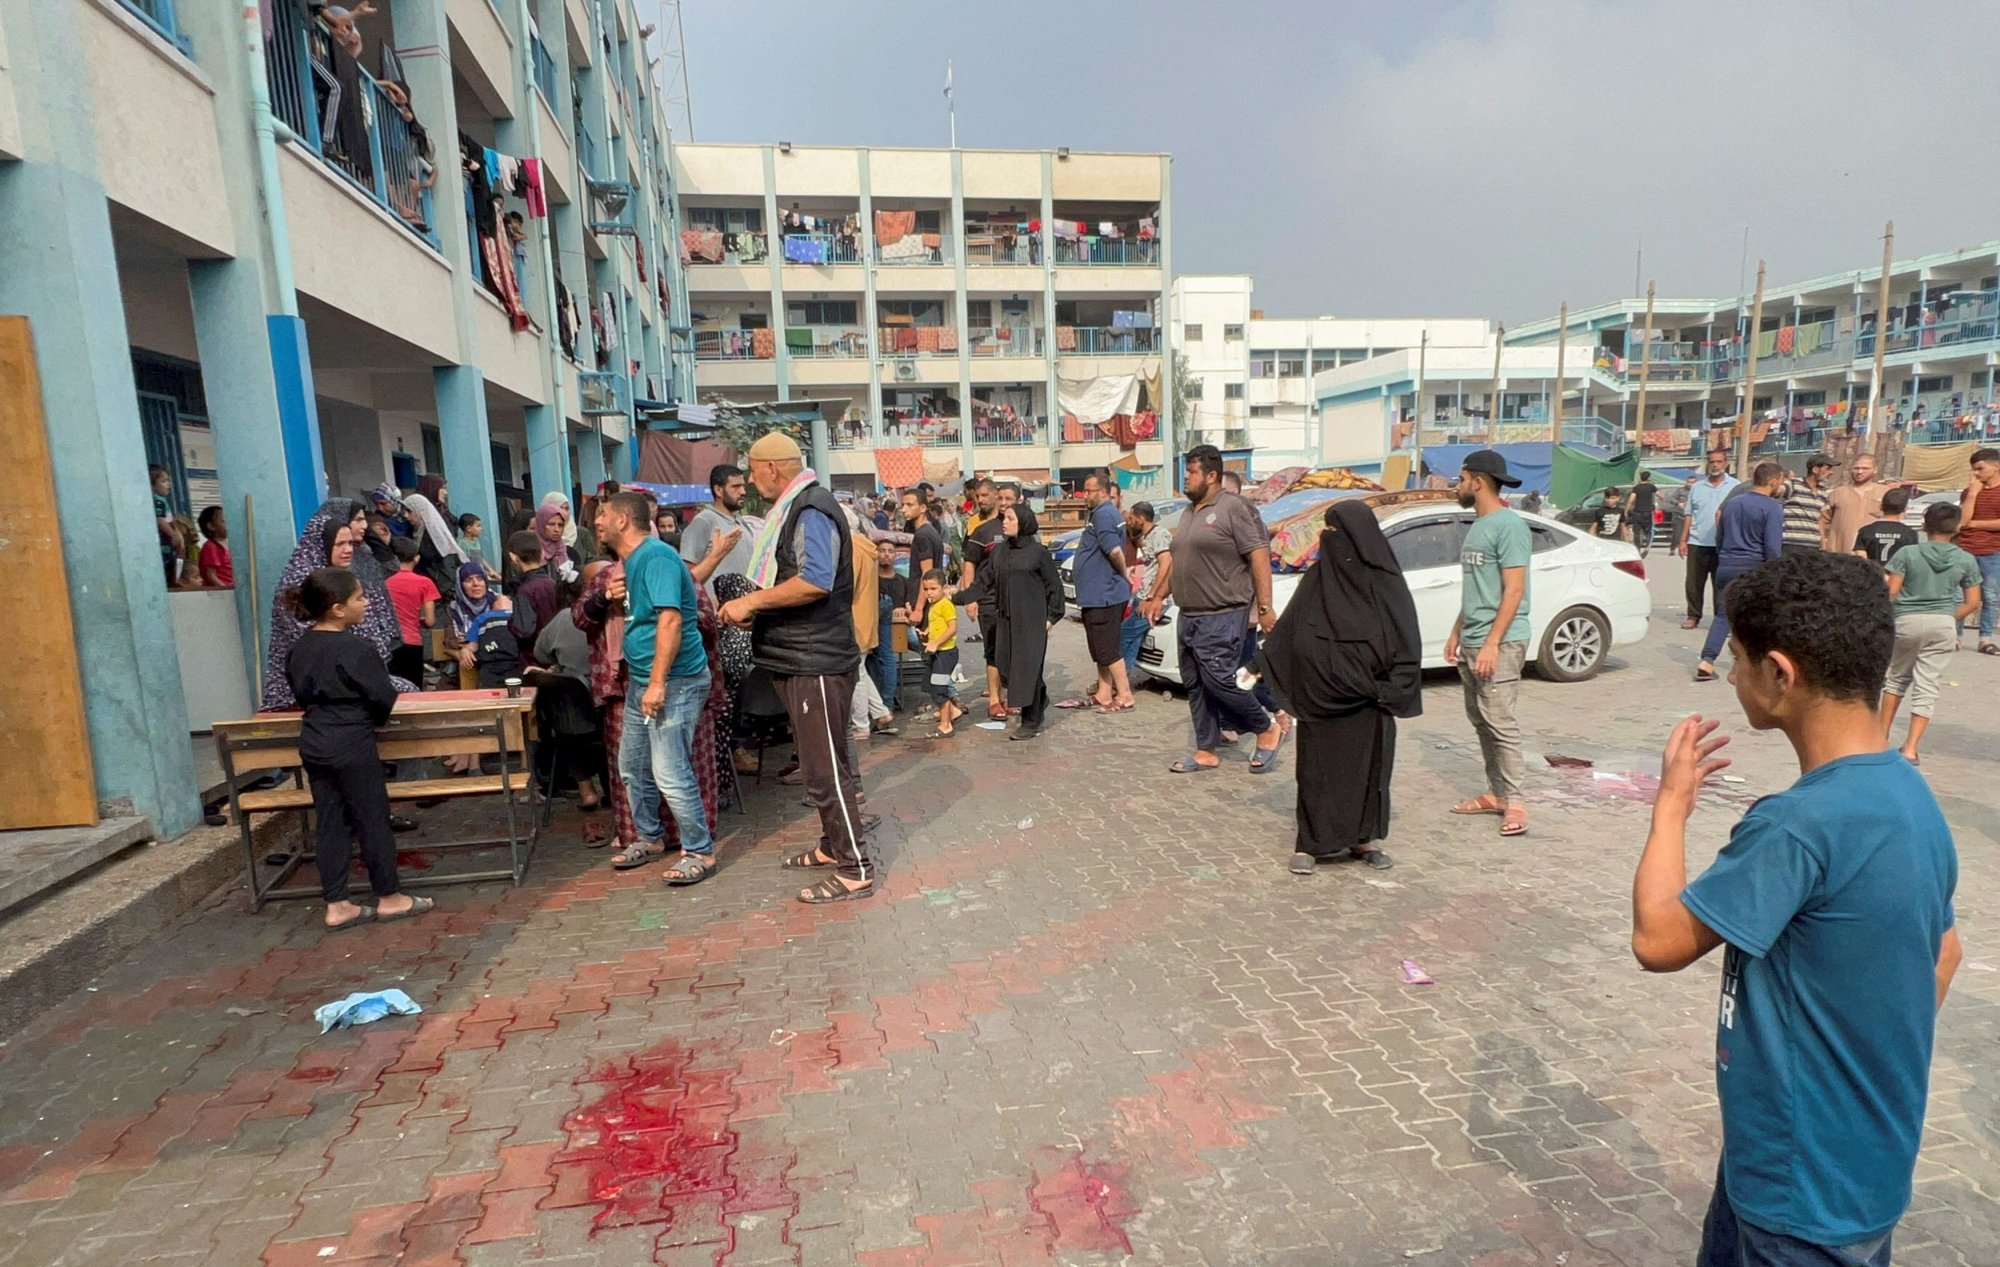 Παλαιστίνη: Επιχειρήσεις στην Γάζα, σποραδικές αντεπιθέσεις, το βάρος στην Δυτική Όχθη για το Ισραήλ